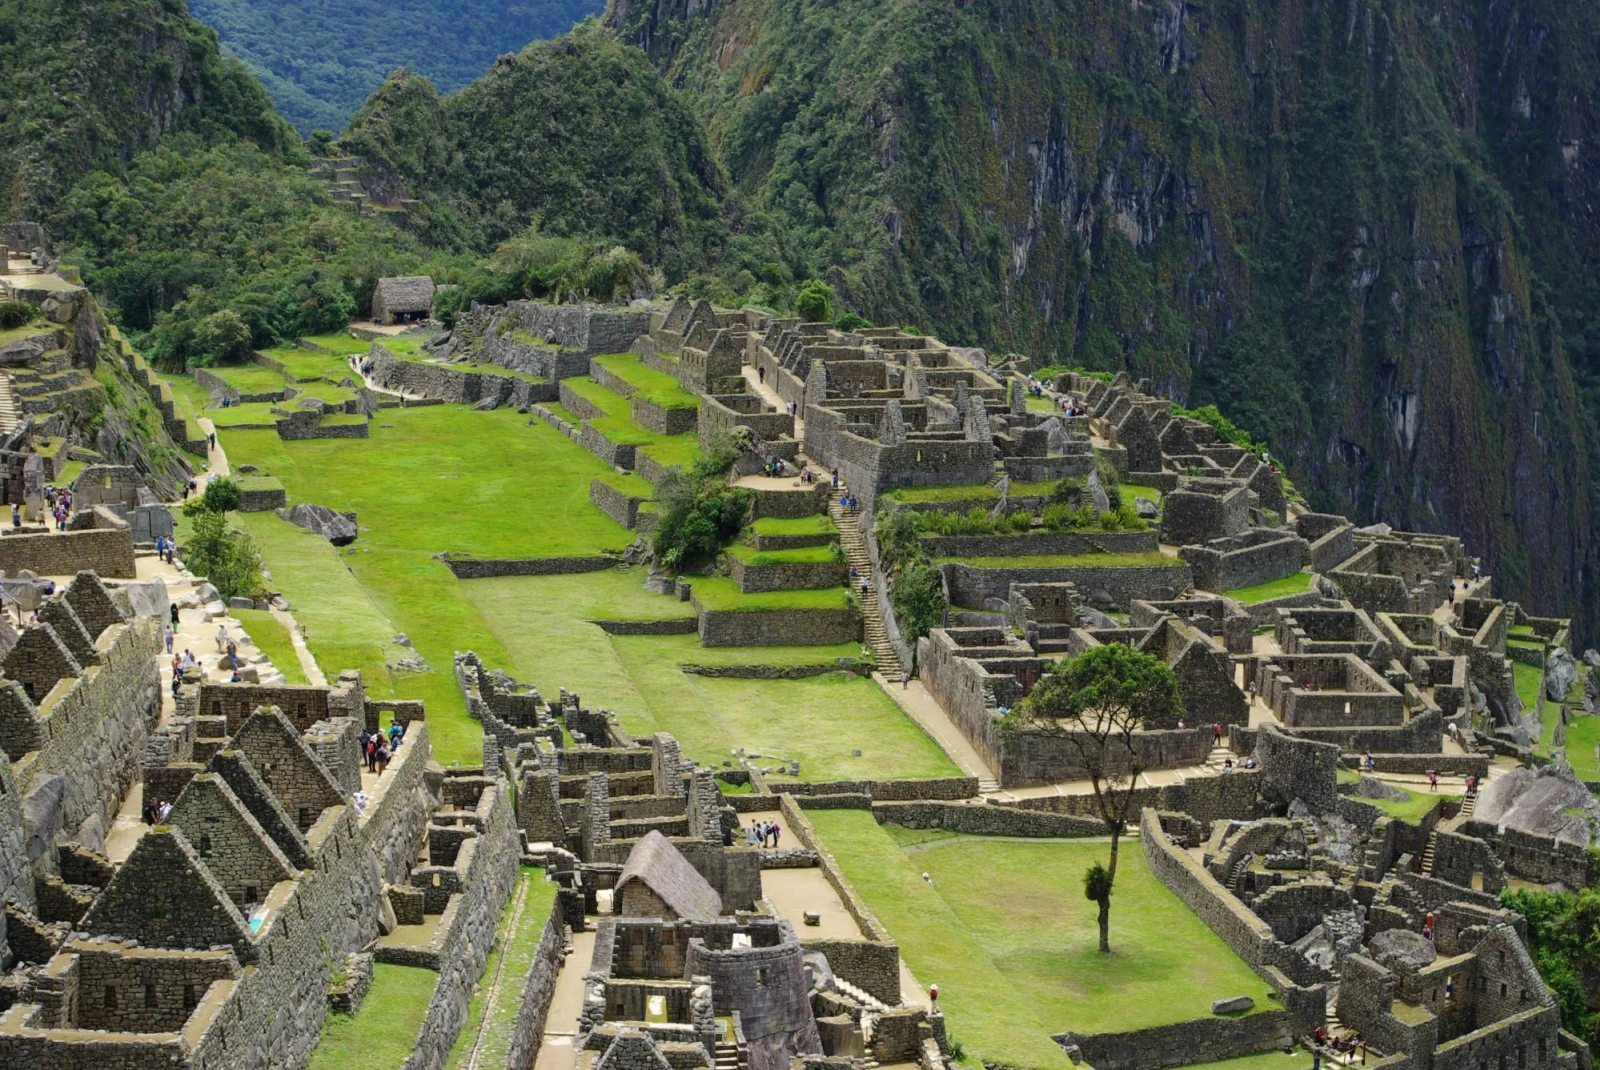 Ancient ruins and greenery in Machu Picchu, Peru.